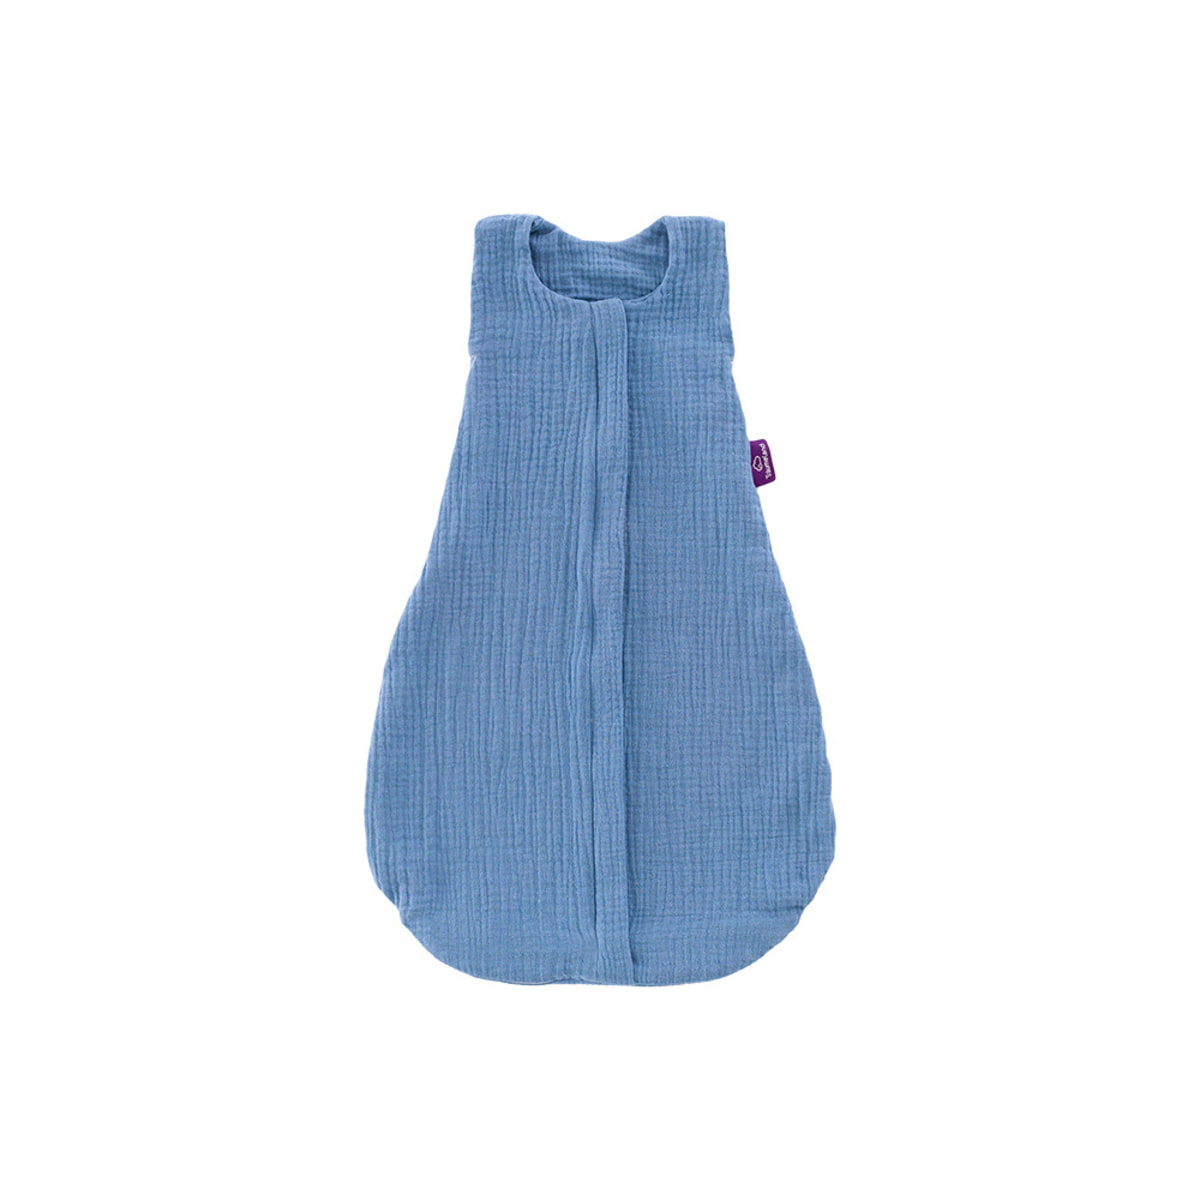 Sommerschlafsack aus Baumwollmusselin in hellblau